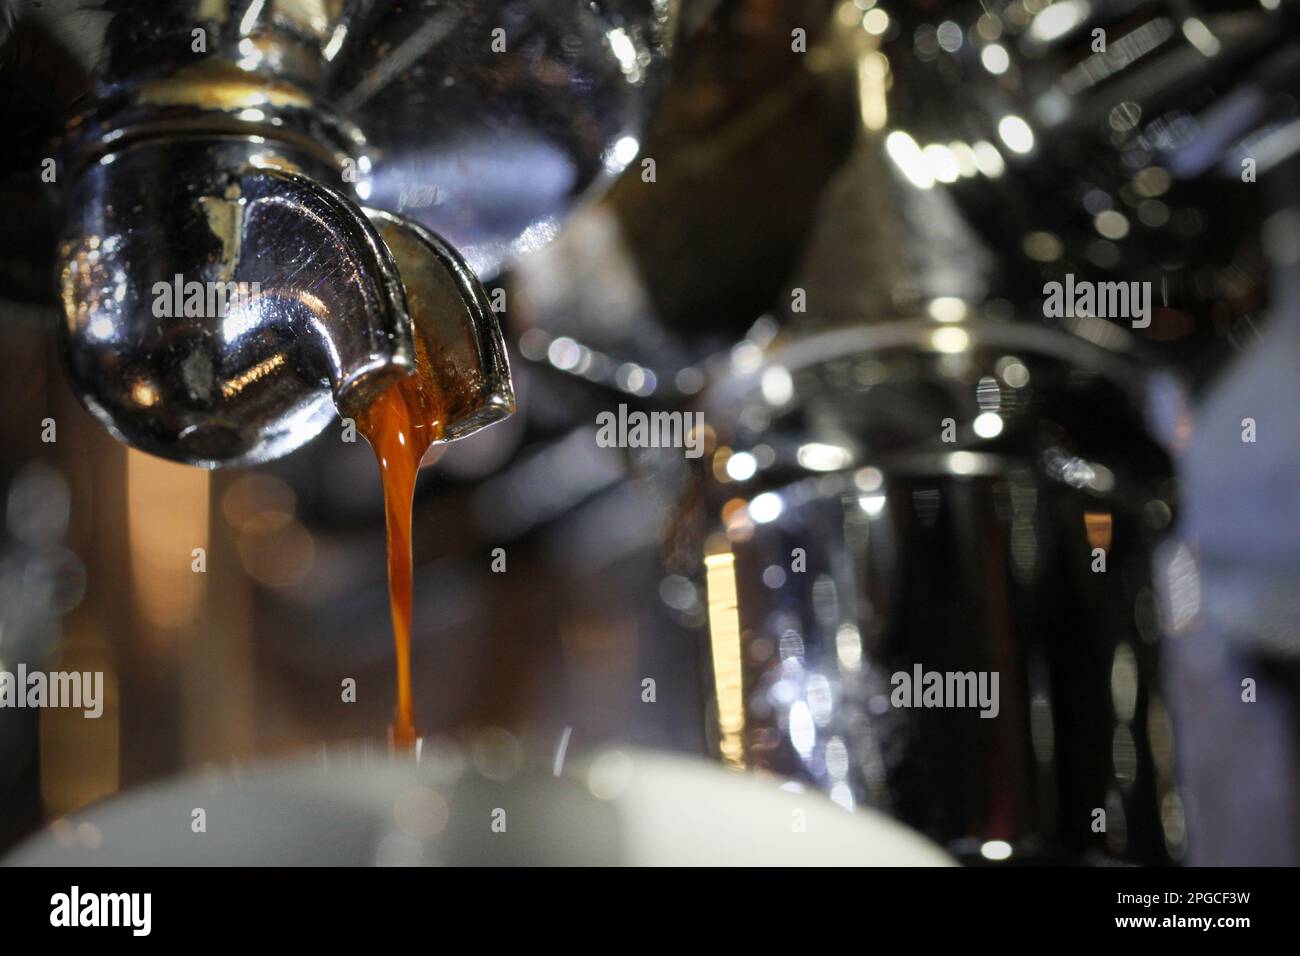 Image macro extrêmement rapprochée d'un espresso chaud frais en flux fin, puisqu'il se déverse d'une seule poignée de porte-filtre sur une machine à café. Barista Banque D'Images